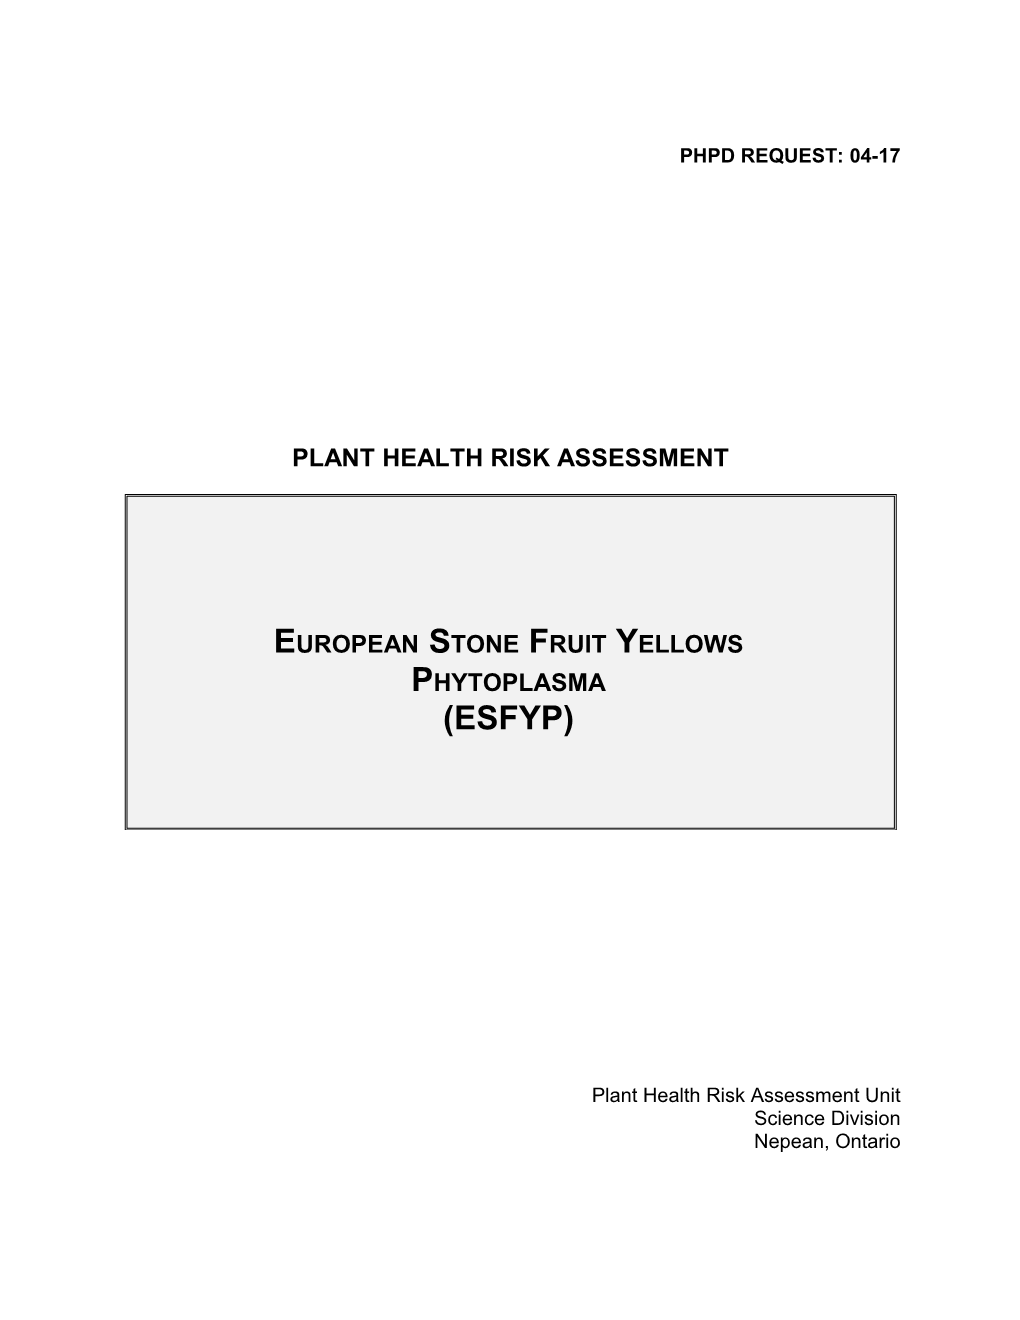 Plant Health Risk Assessment